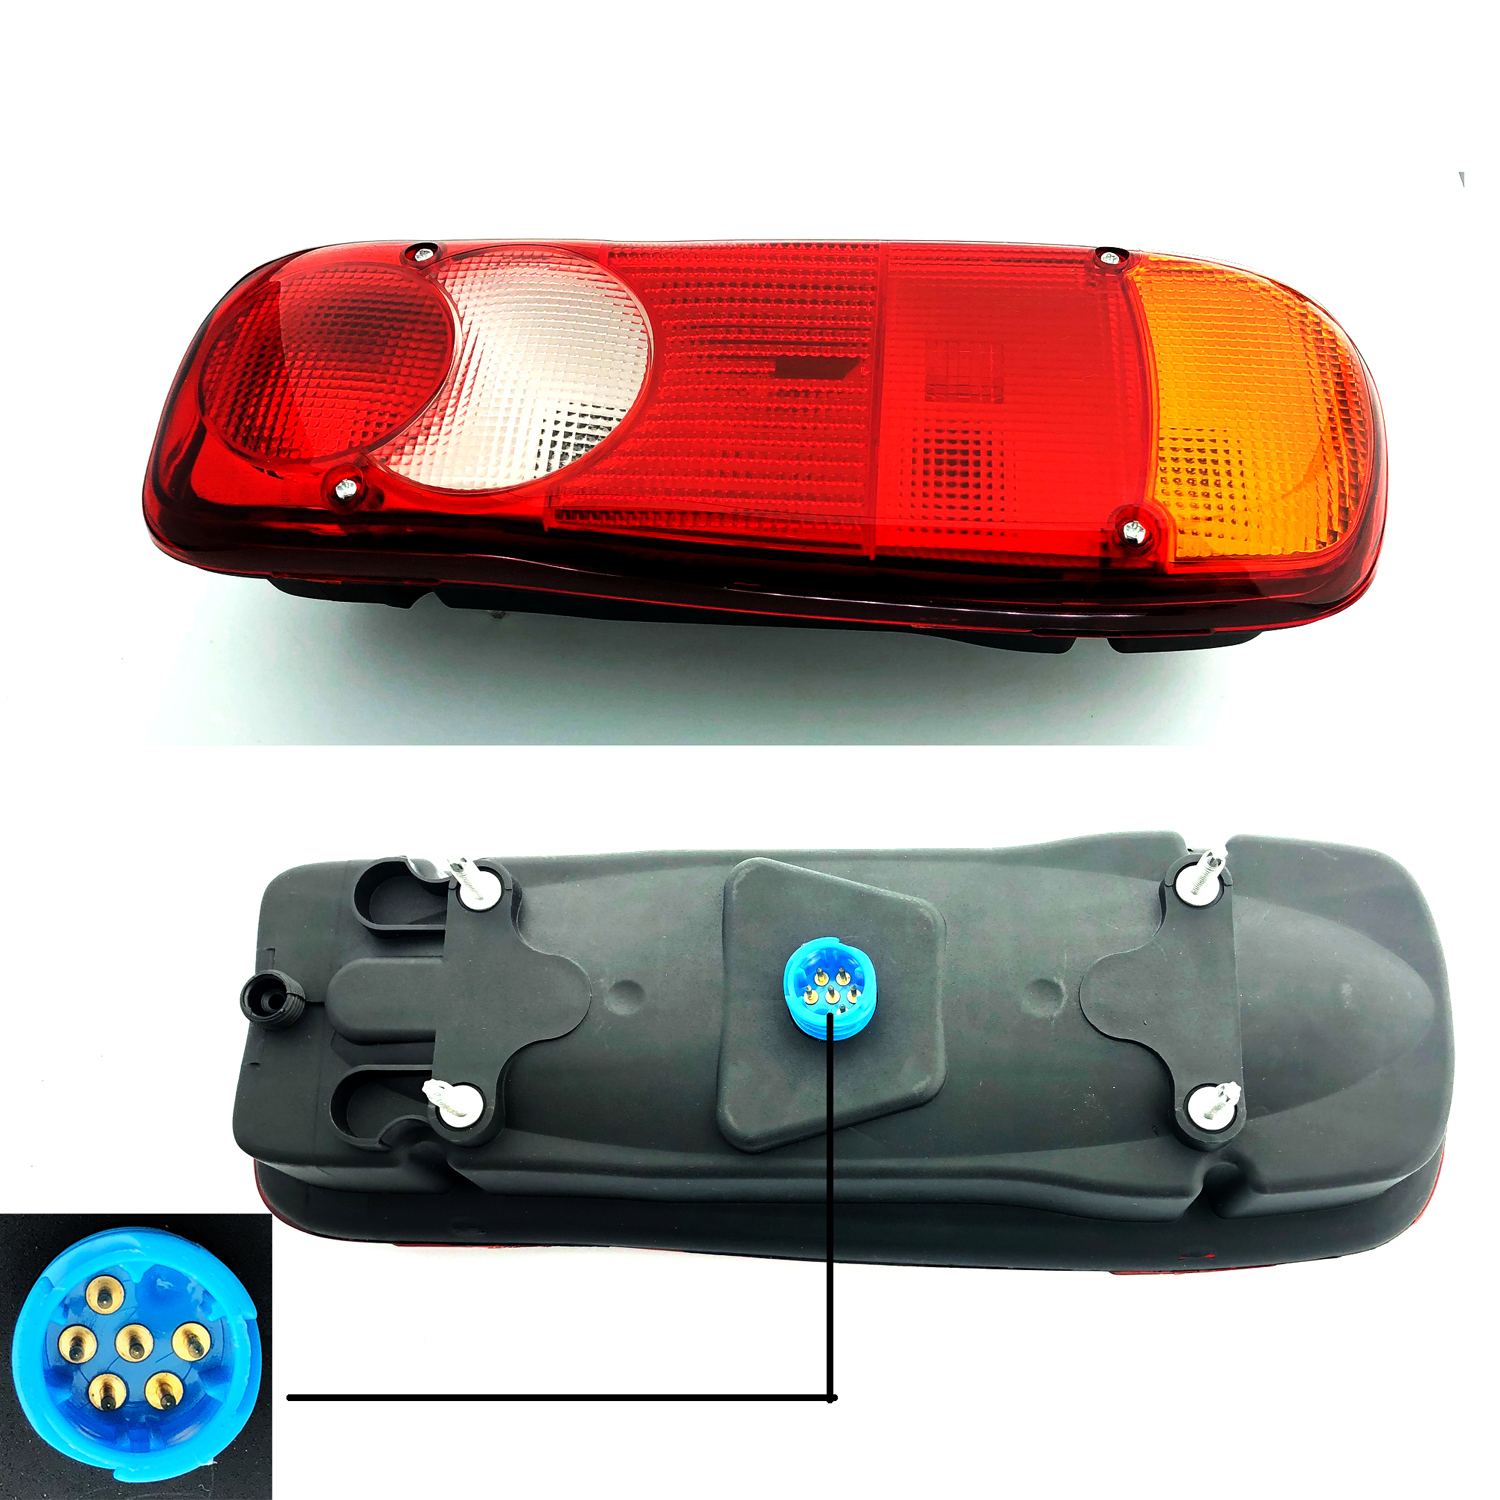 Peugeot Boxer Chasis Cab (Lamp Lights) VAN REAR LAMP LIGHT LEFT HAND ( UK Passenger Side ) 2012 to 2020 – VAN REAR LAMP LIGHT